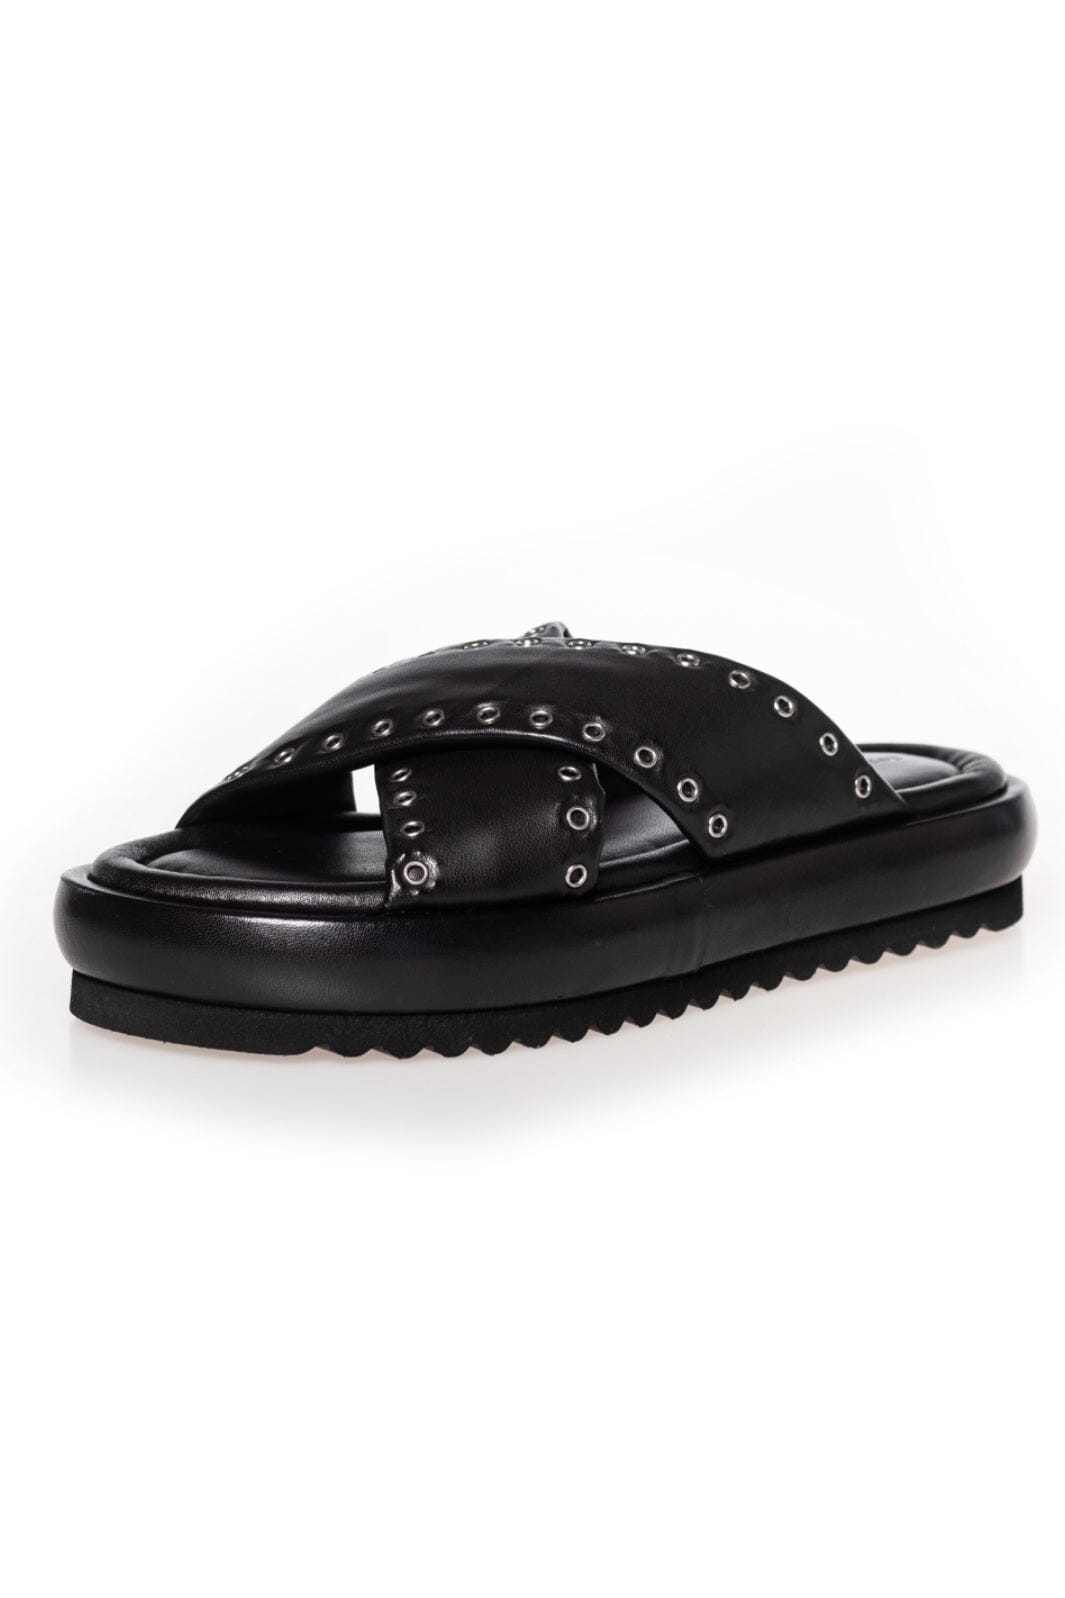 Copenhagen Shoes - Believe - 0001 Black Sandaler 